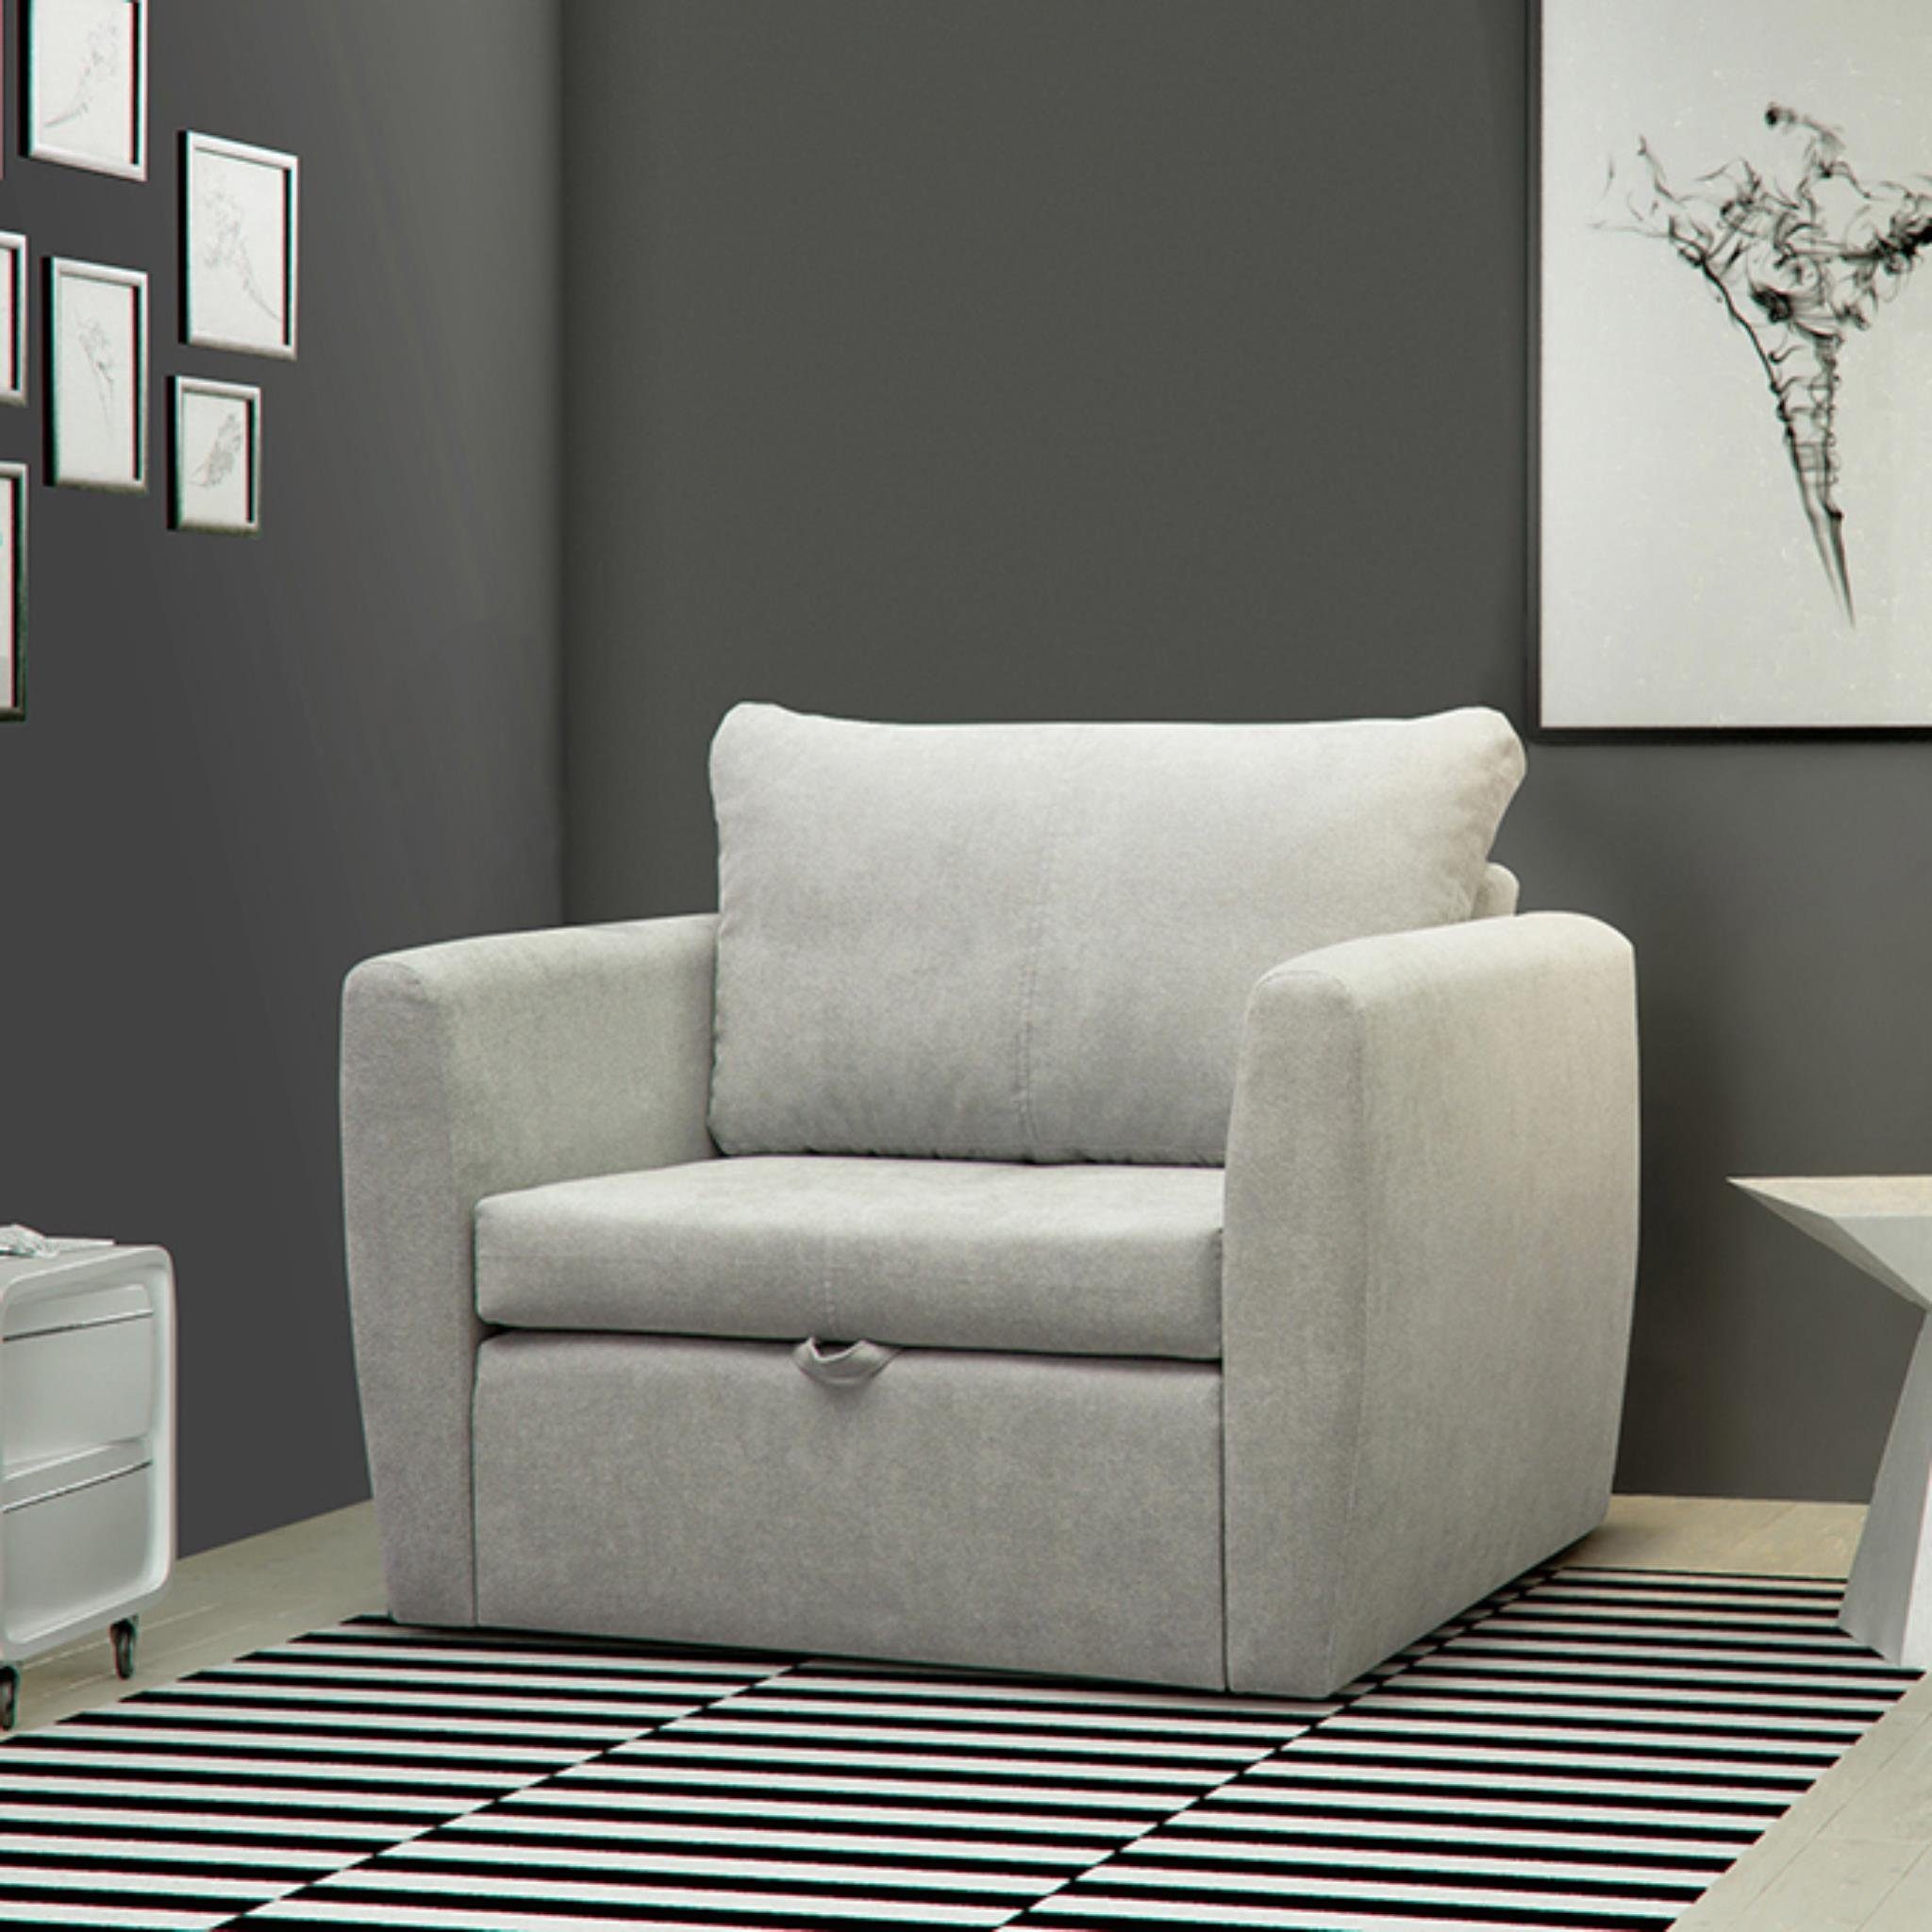 Beautysofa Relaxsessel Kamel (Modern 1-Sitzer Sofa, Wohnzimmersessel), mit Schlaffunktion, Bettkasten, Polstersessel Hellgrau (alfa 17)